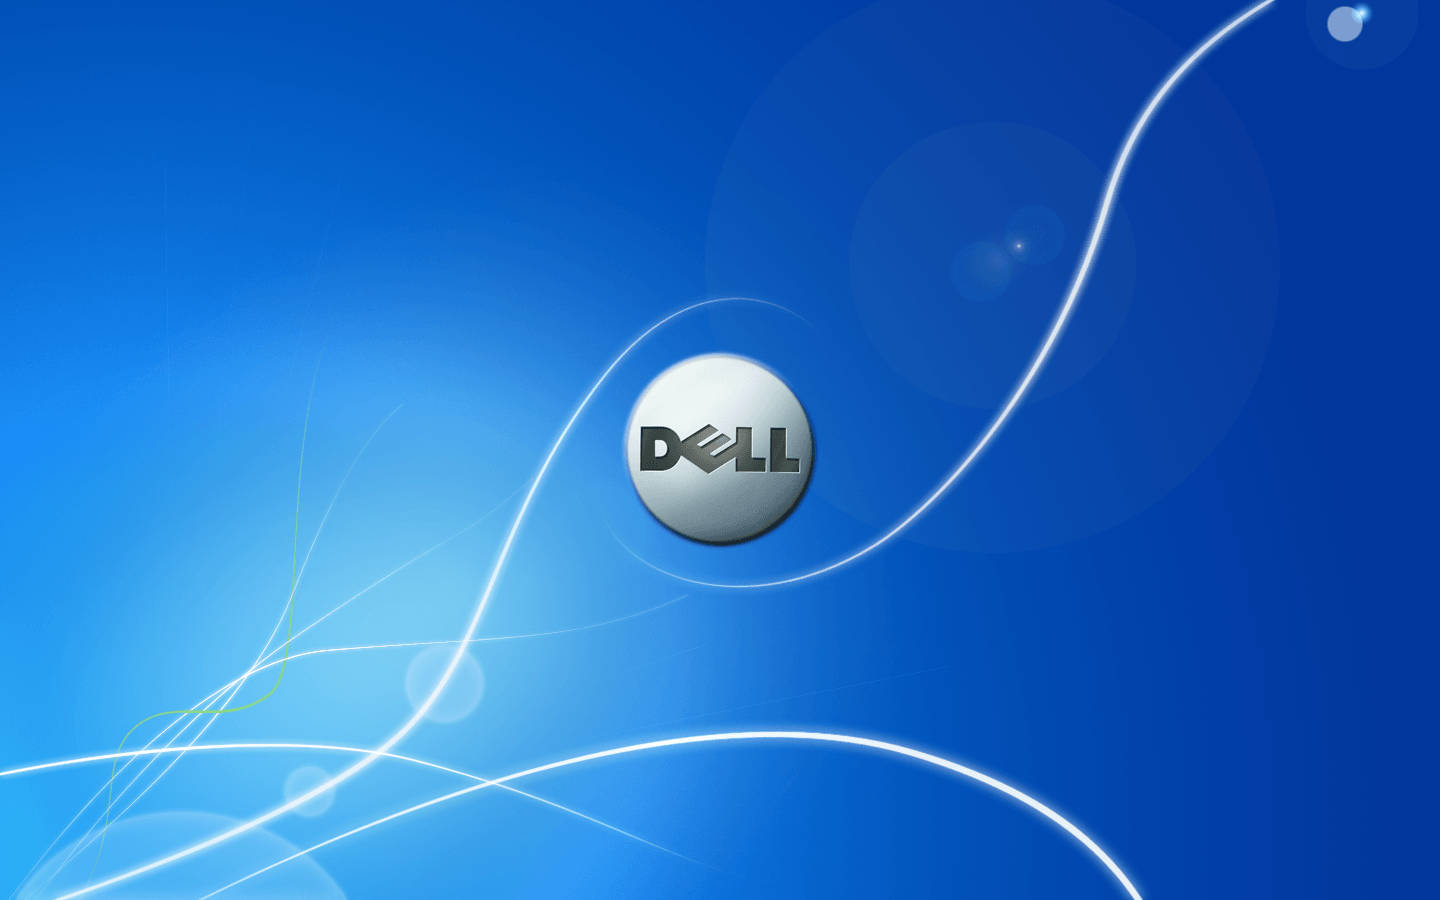 Dell Trademark On Blue